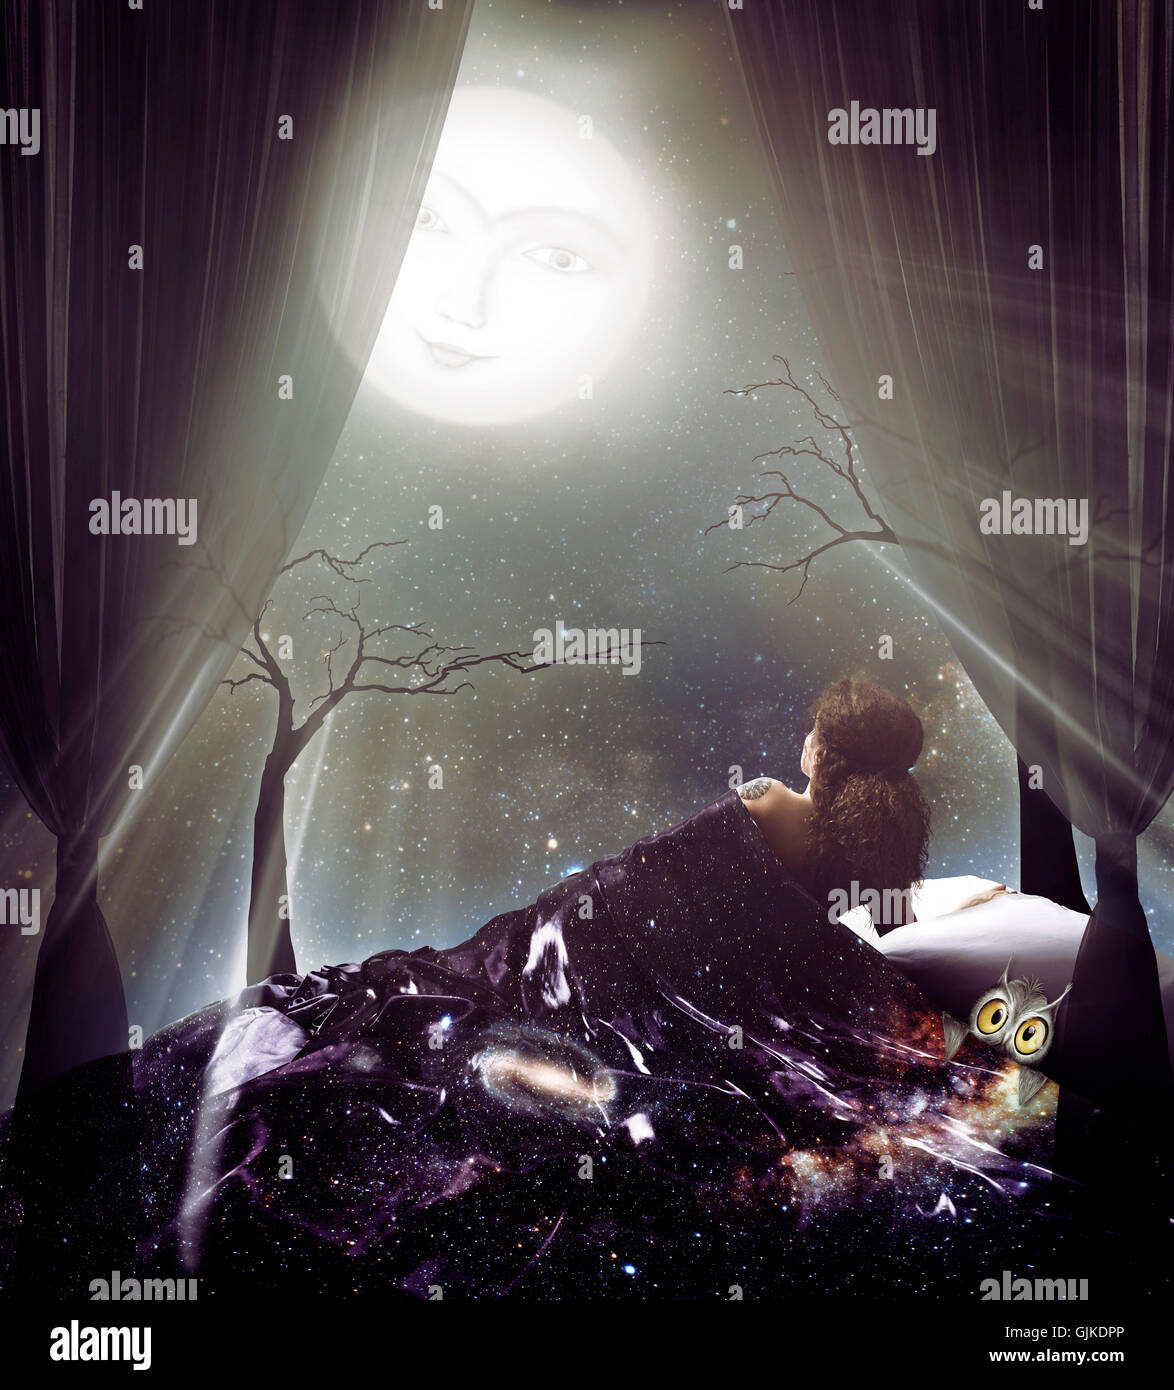 Lizenz verfügbar um MaximImages.com Uhr - angezündet von der Mondlichtfrau unter der Sternenhimmeldecke mit einer Eule unter dem Vollmond künstlerischer spiritueller Phot Stockfoto